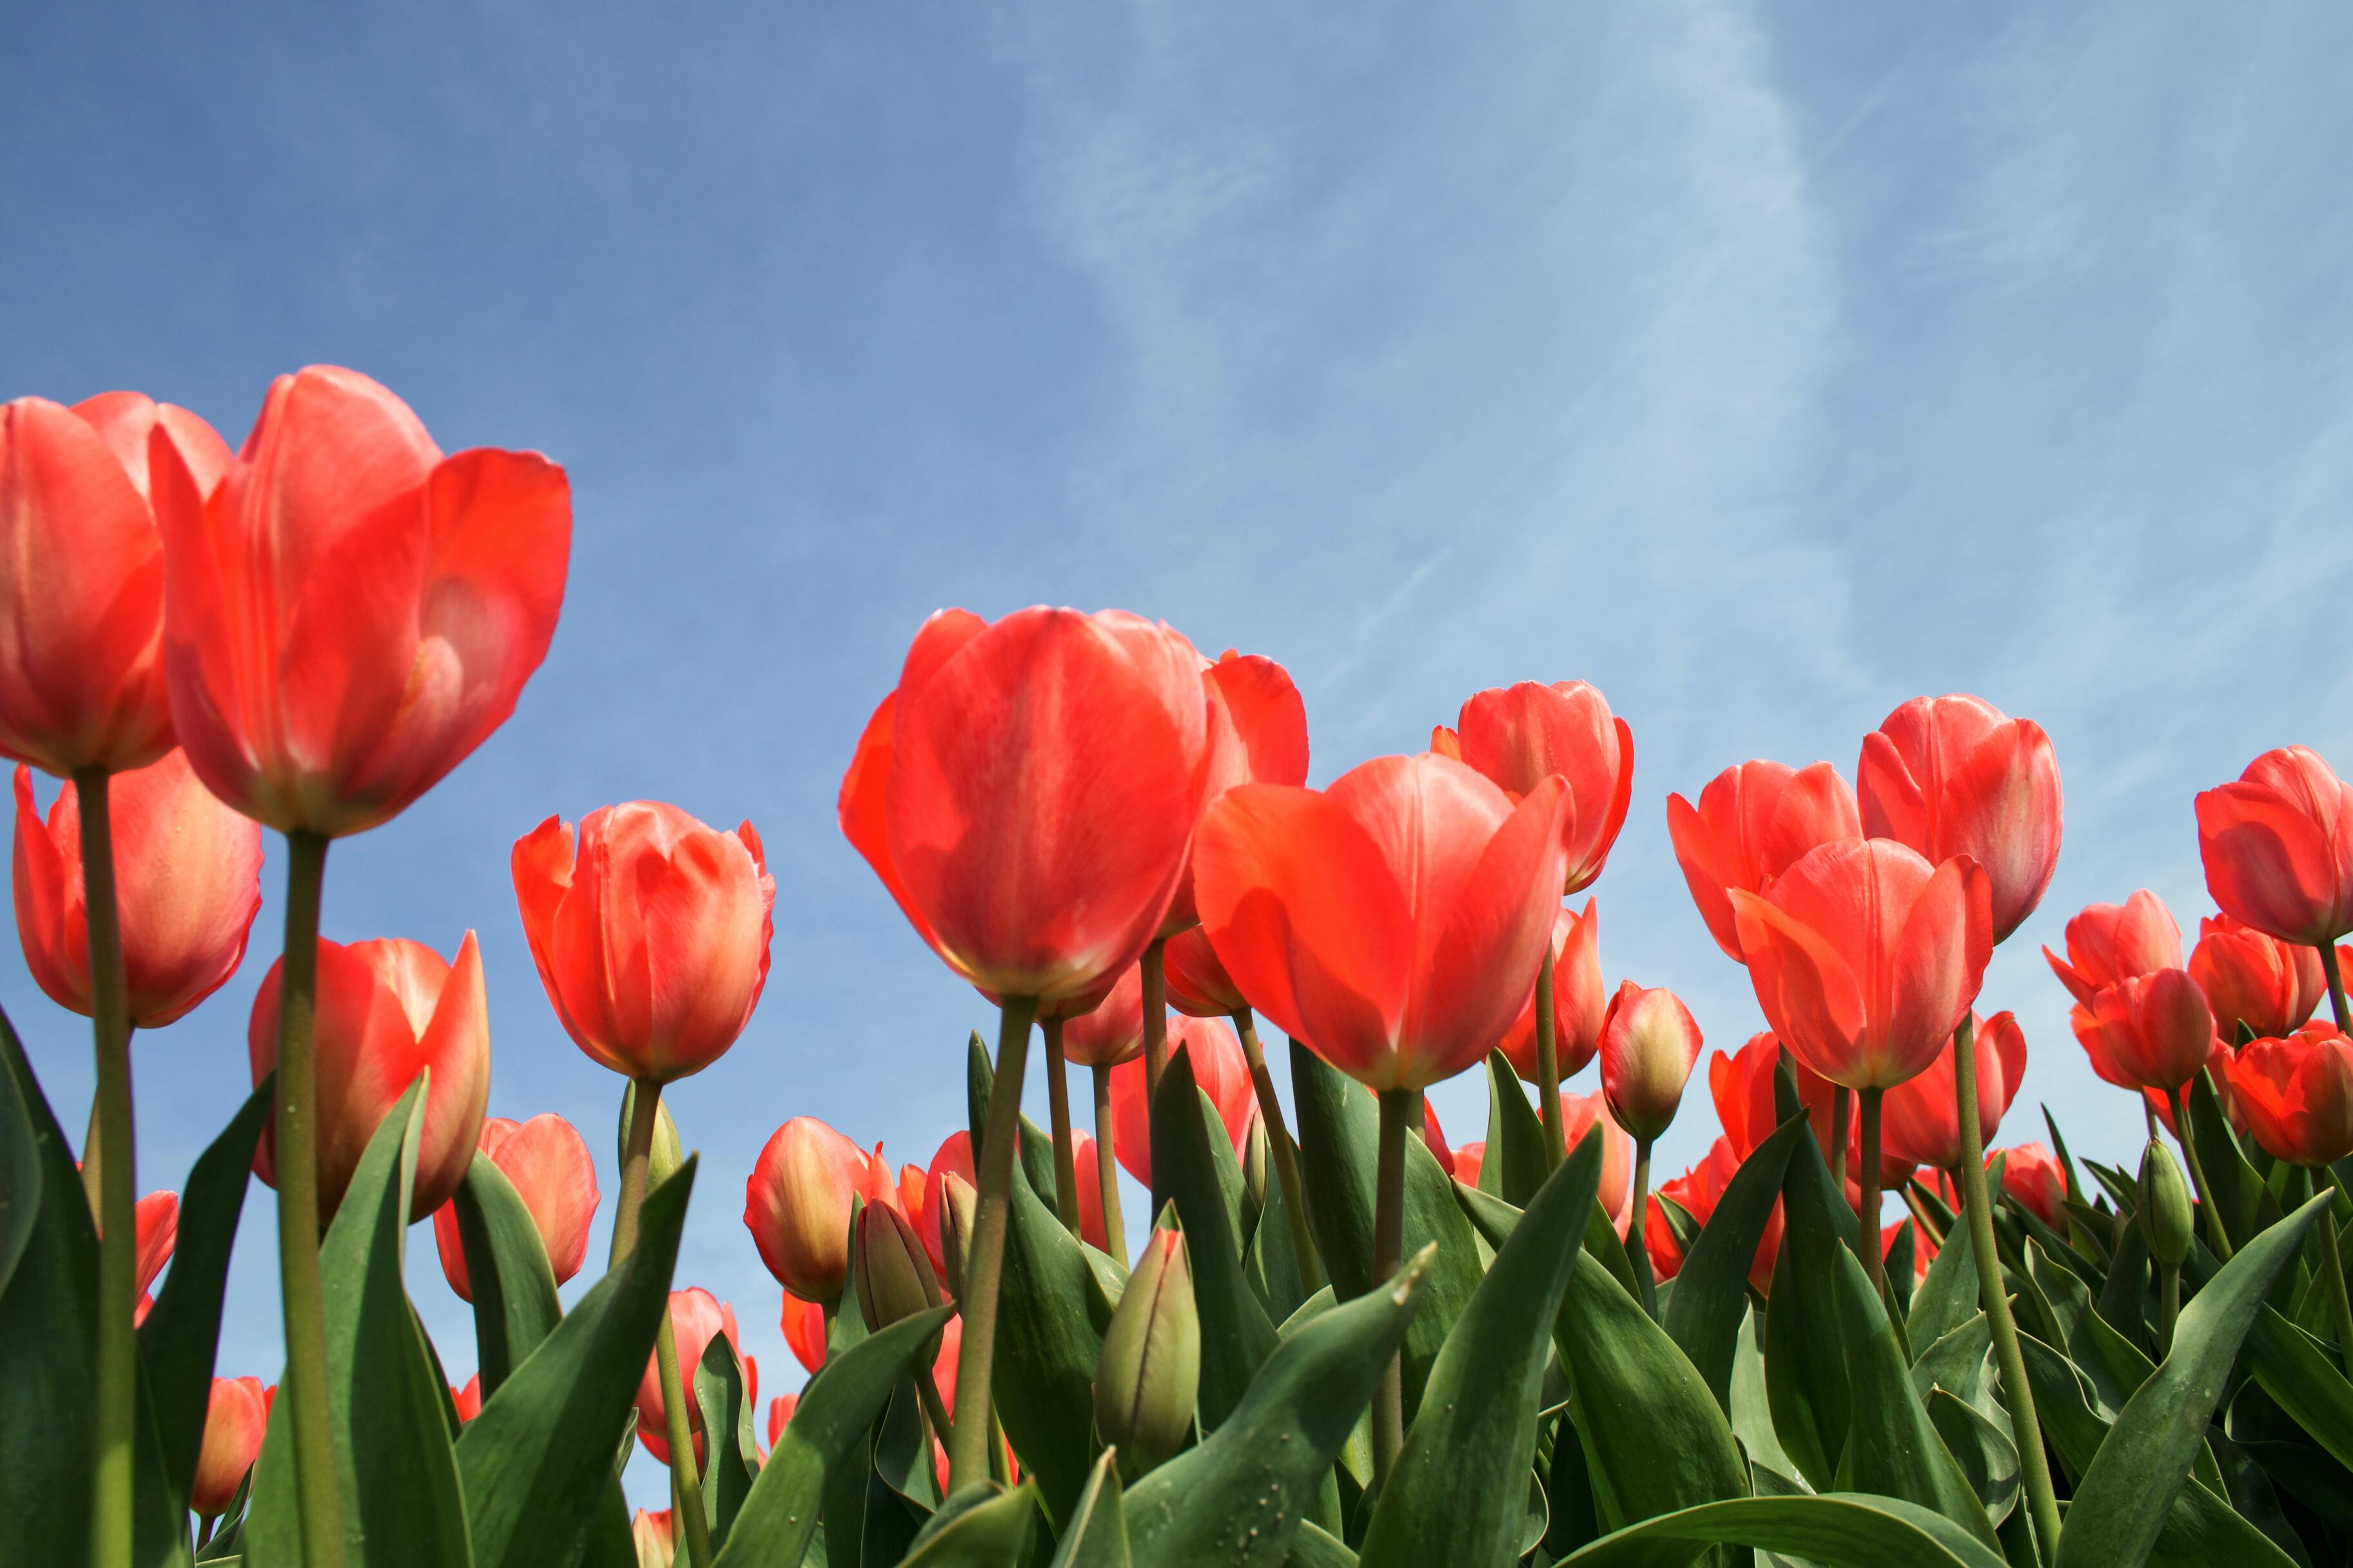 Голландия — страна цветов: нидерландцы начали использовать майнинг для выращивания тюльпанов